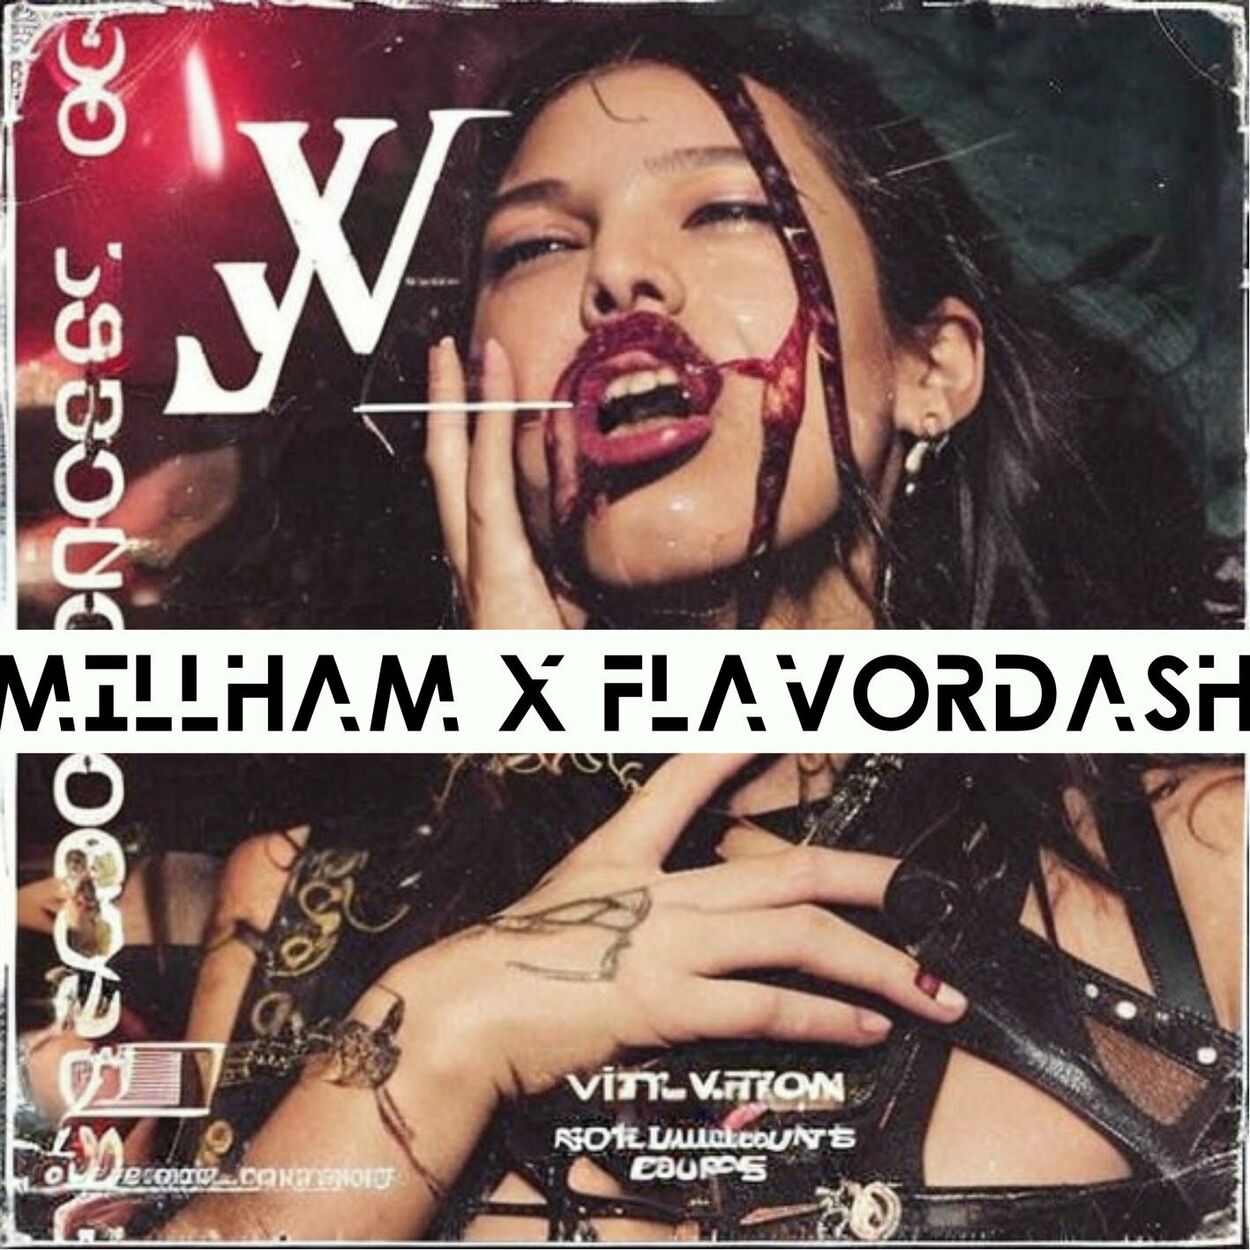 Flavordash, Millham – Hate On Me – Single